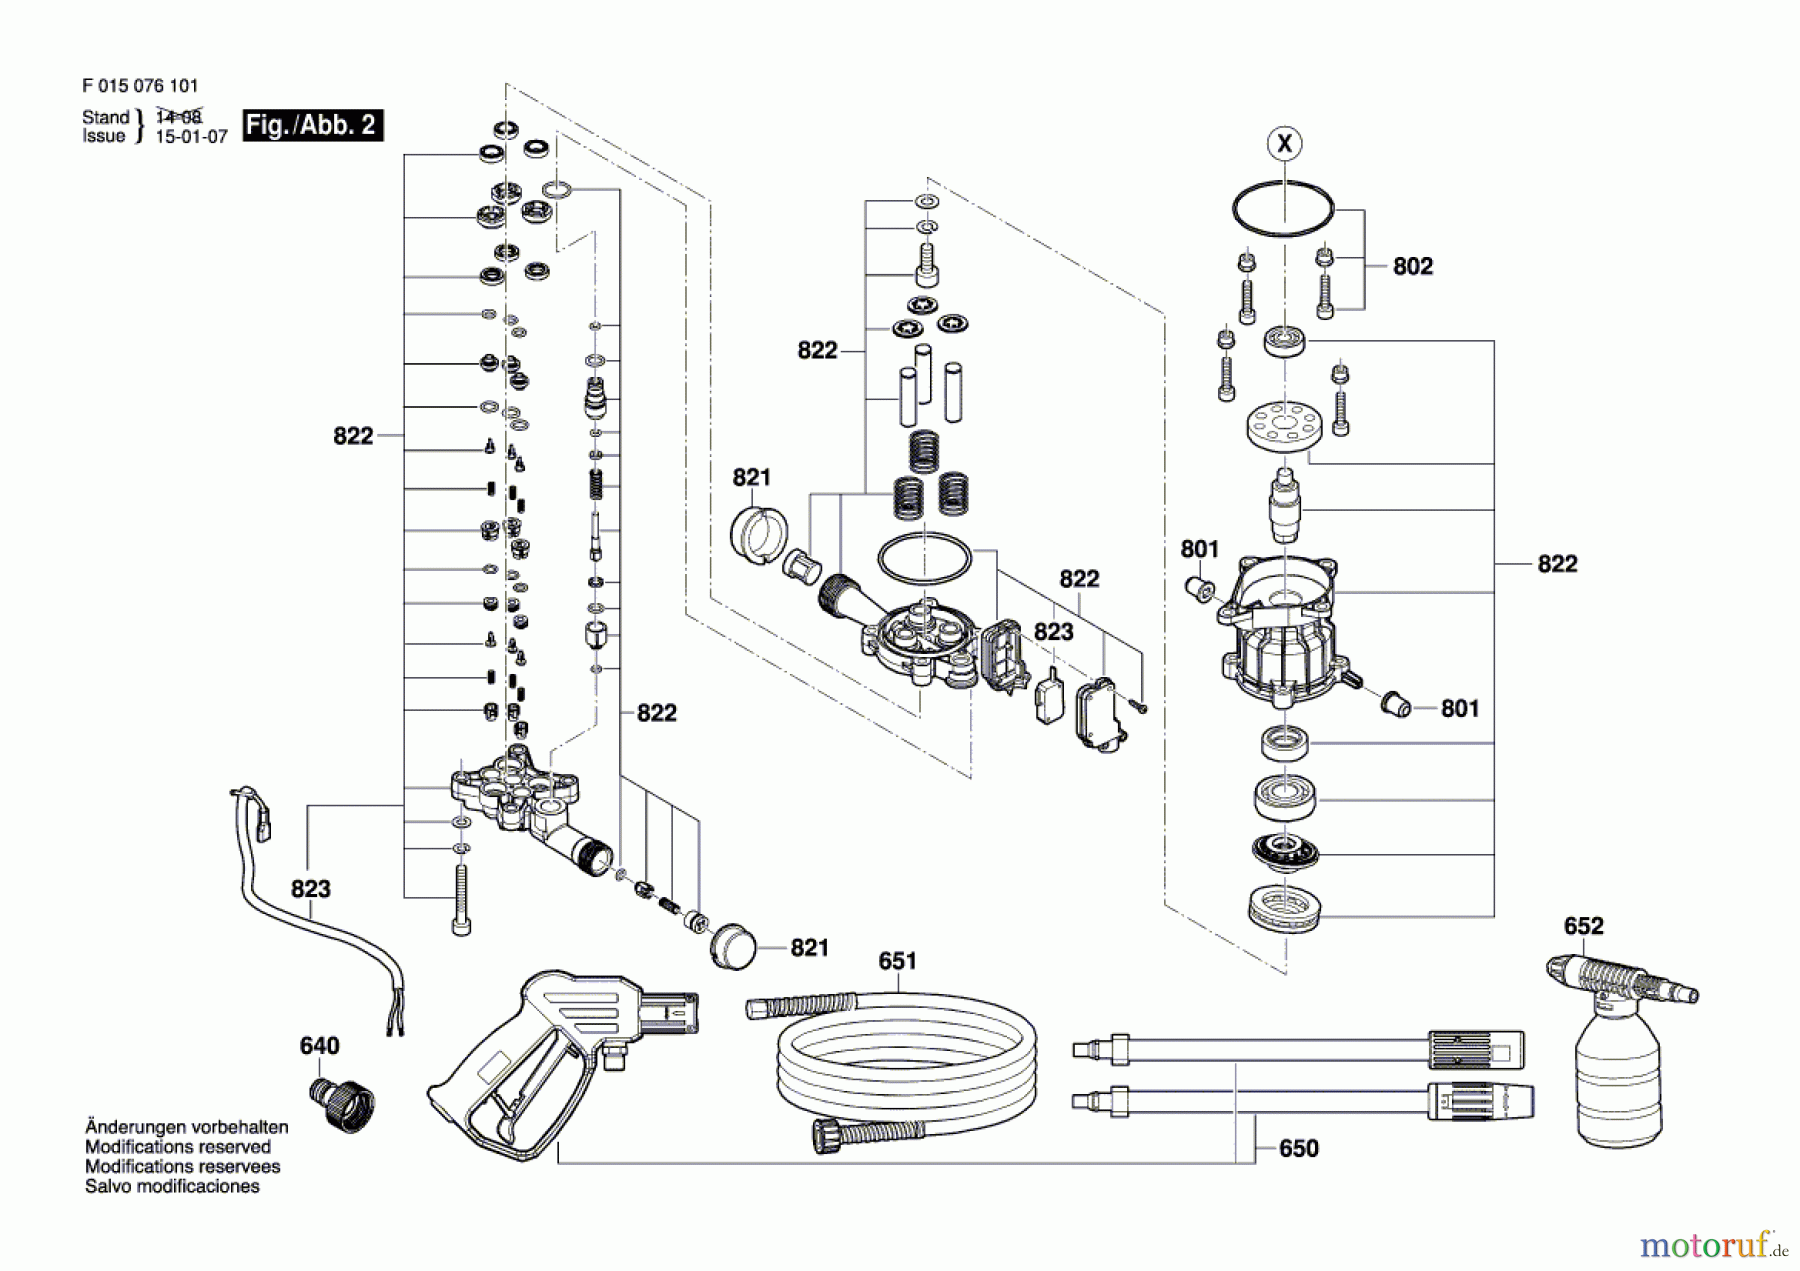  Bosch Wassertechnik Hochdruckreiniger 0761 Seite 2